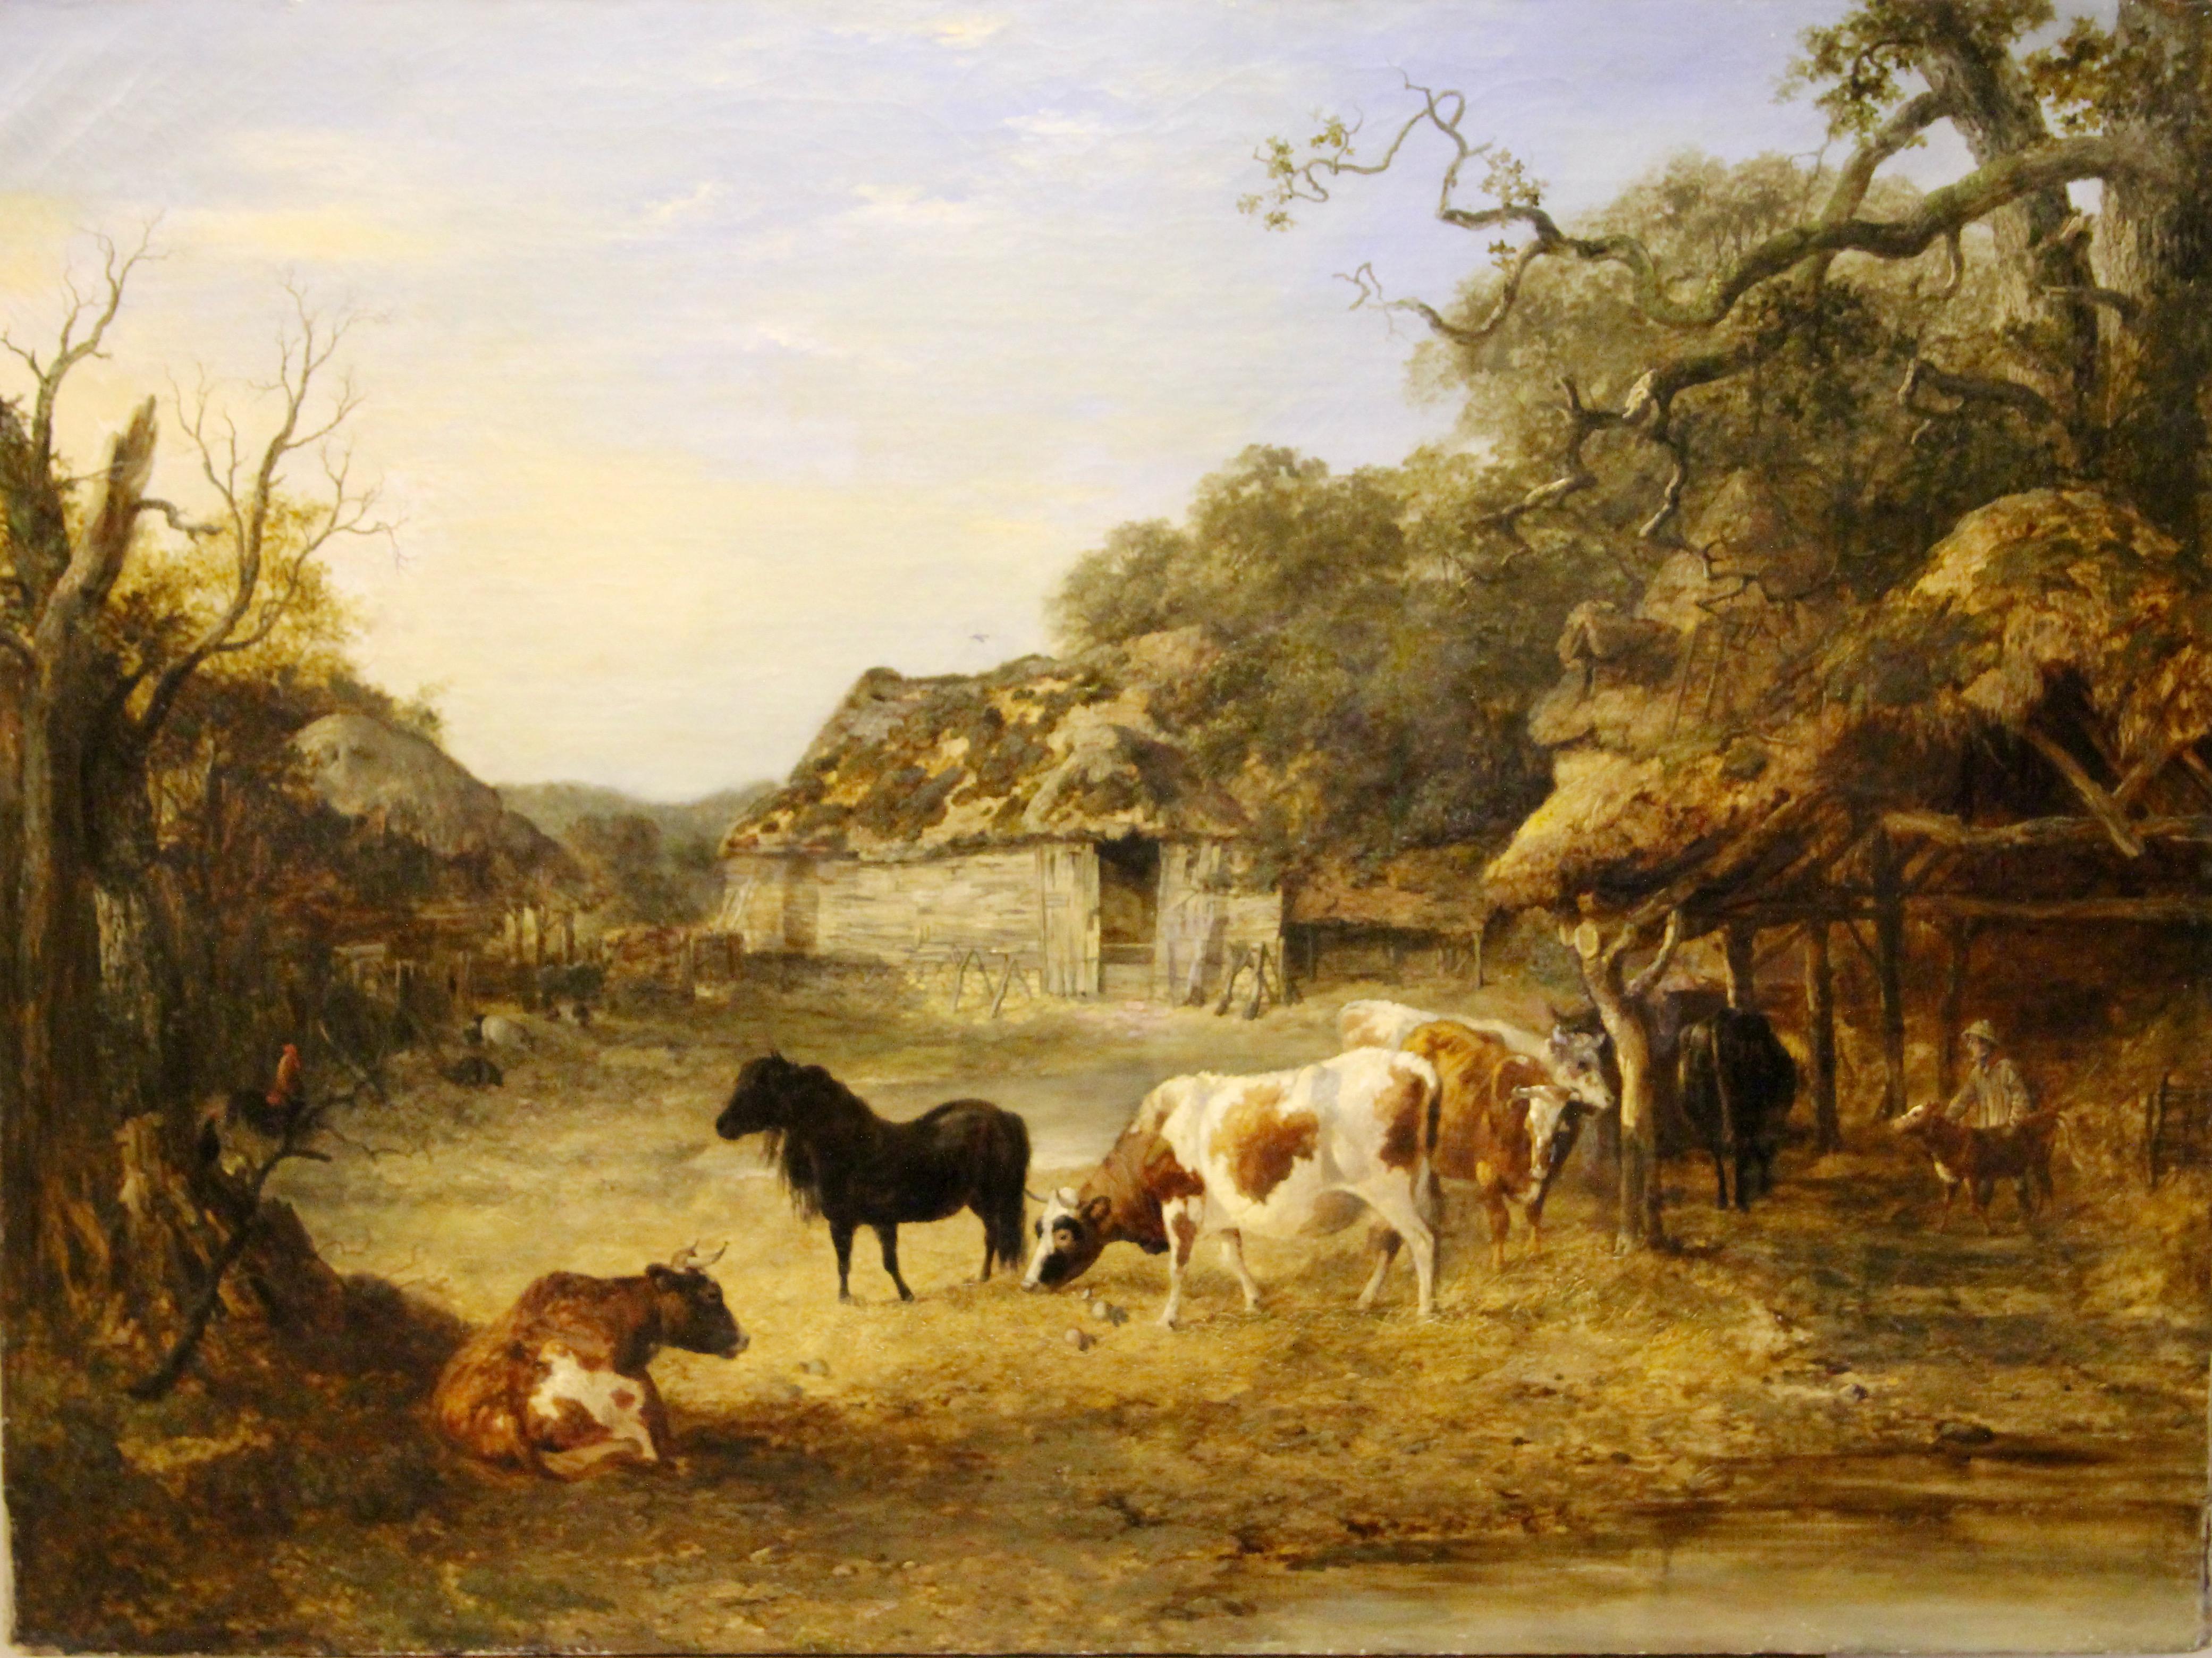 Peinture à l'huile de John Dearman 1852, ferme avec vaches et cheval.

Signé et daté en bas à gauche.
Non encadré. Condition liée à l'âge.

La peinture a été restaurée par des professionnels.